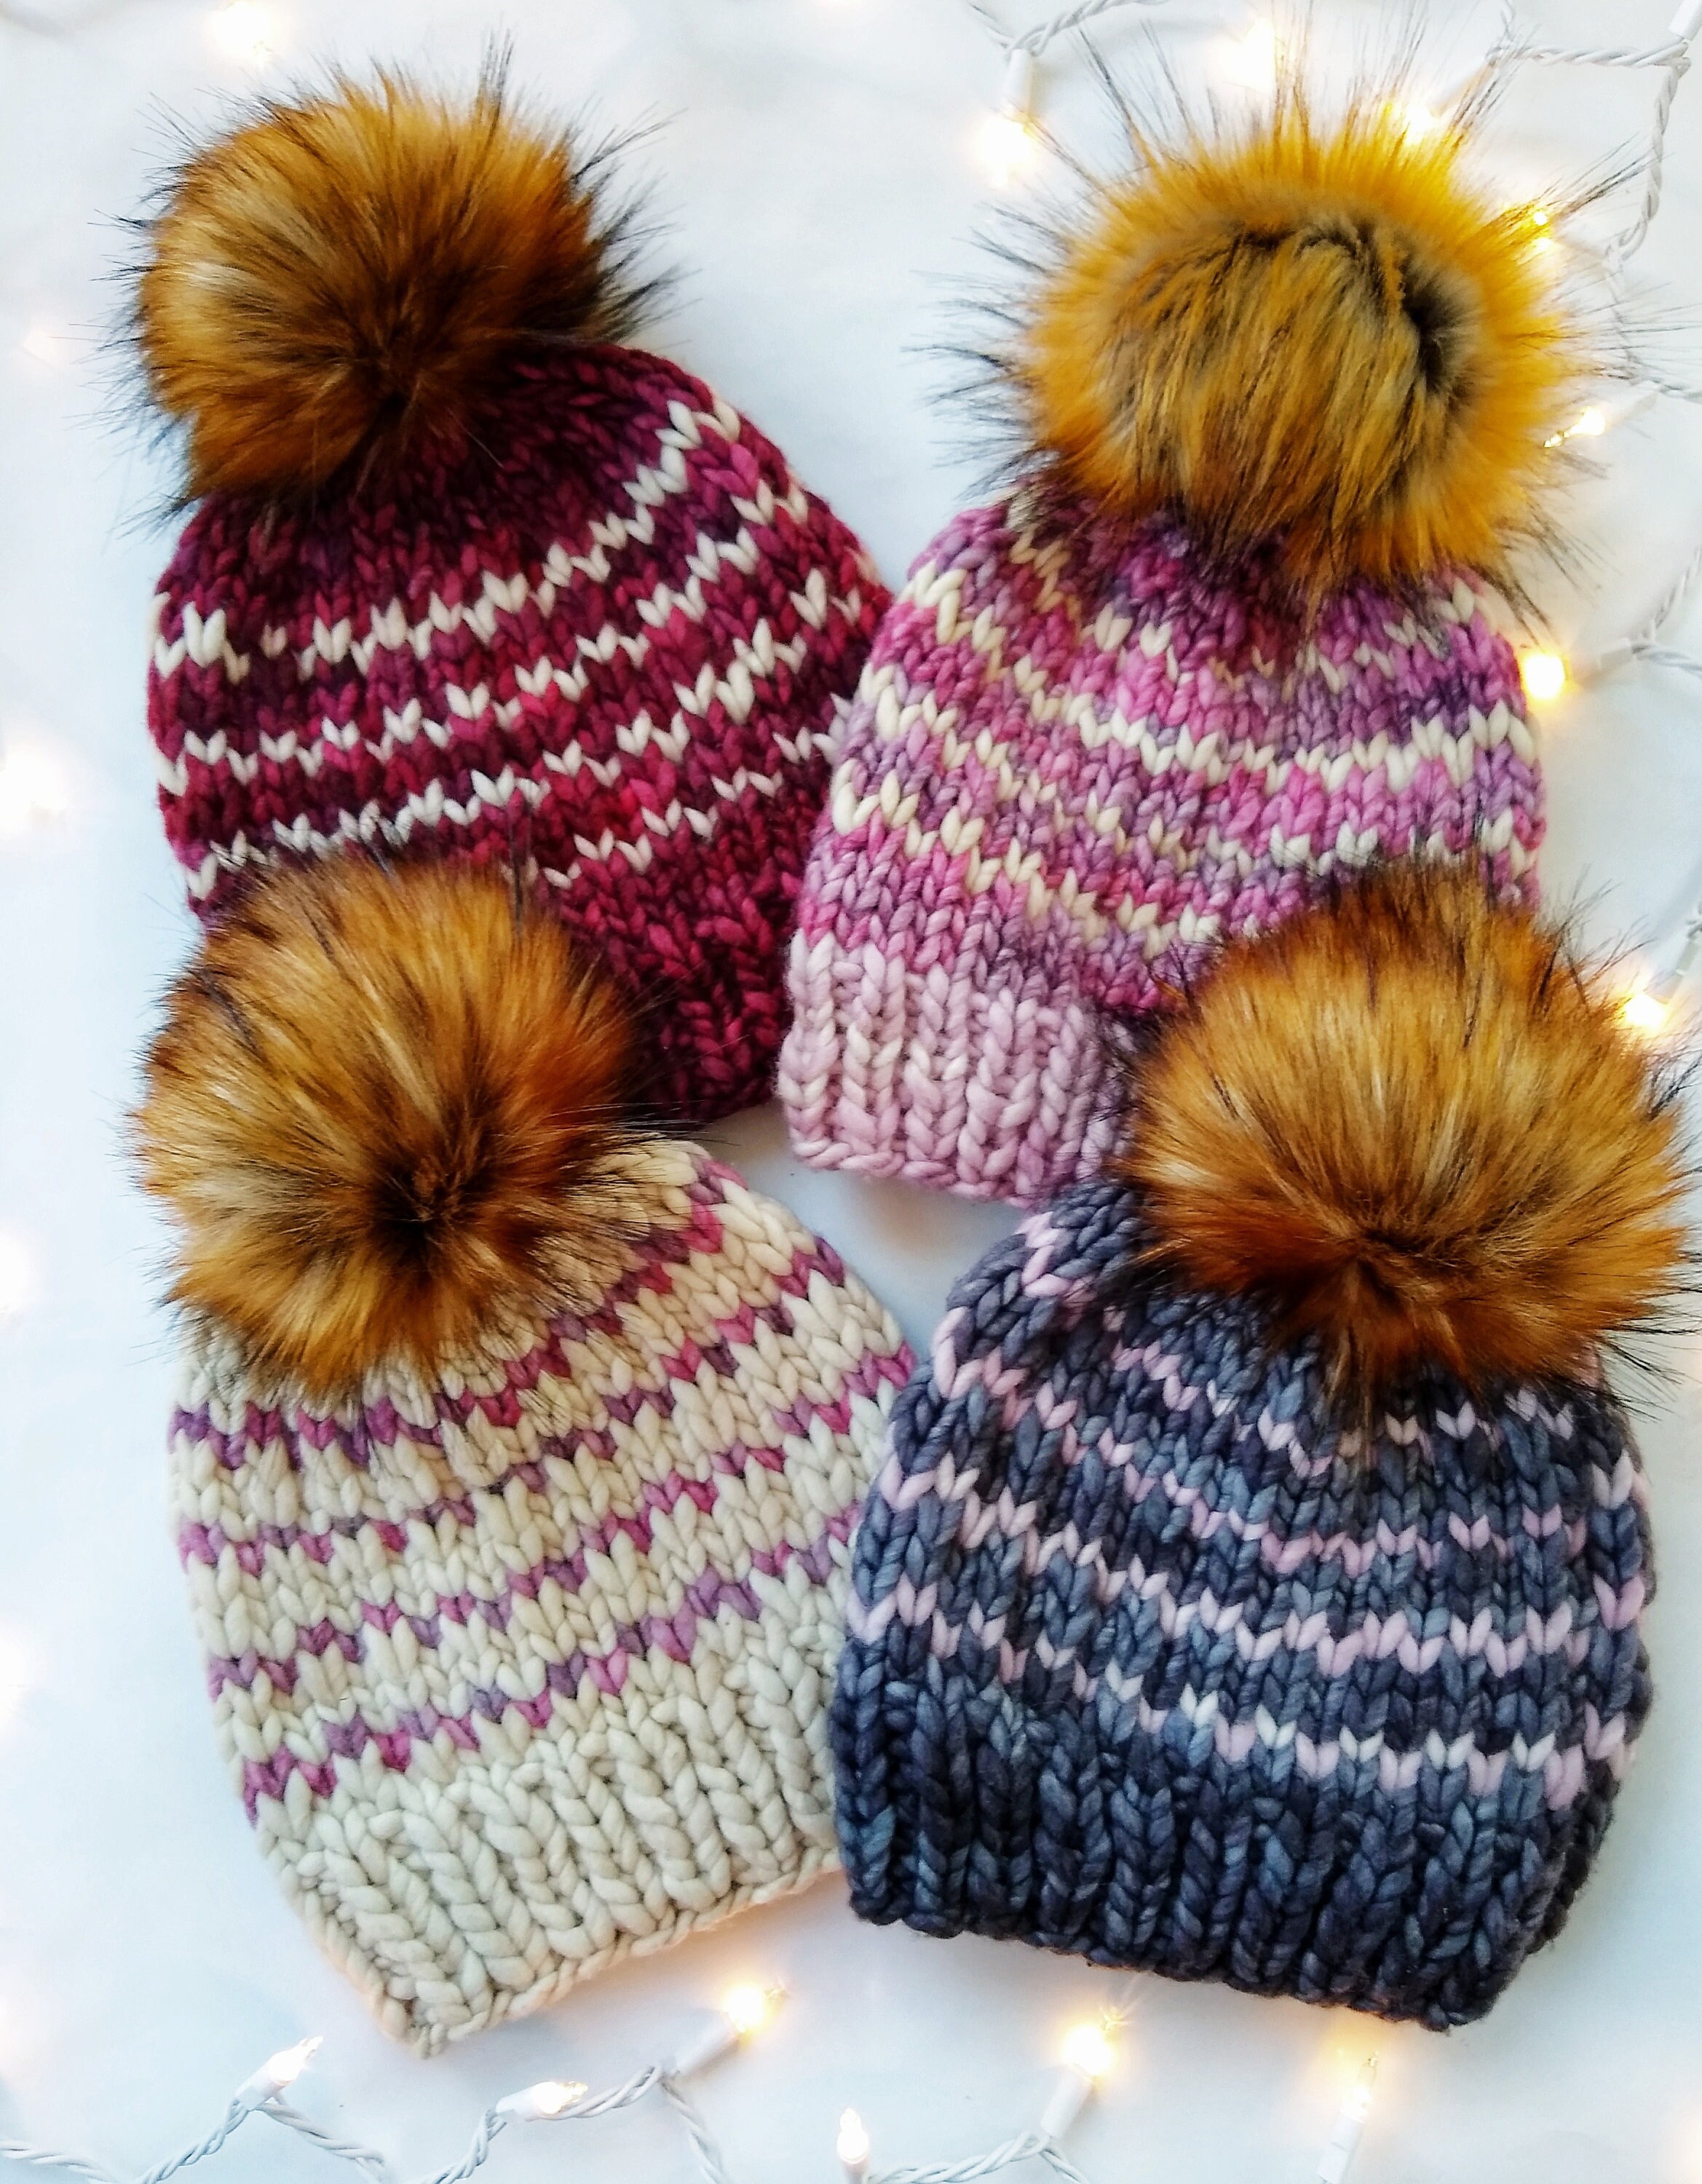 BambooMN JubileeYarn Loom Knitting Pattern Kit for Beginners - Kids Winter Hat Set - Green Winter Hat & Purple Pompom